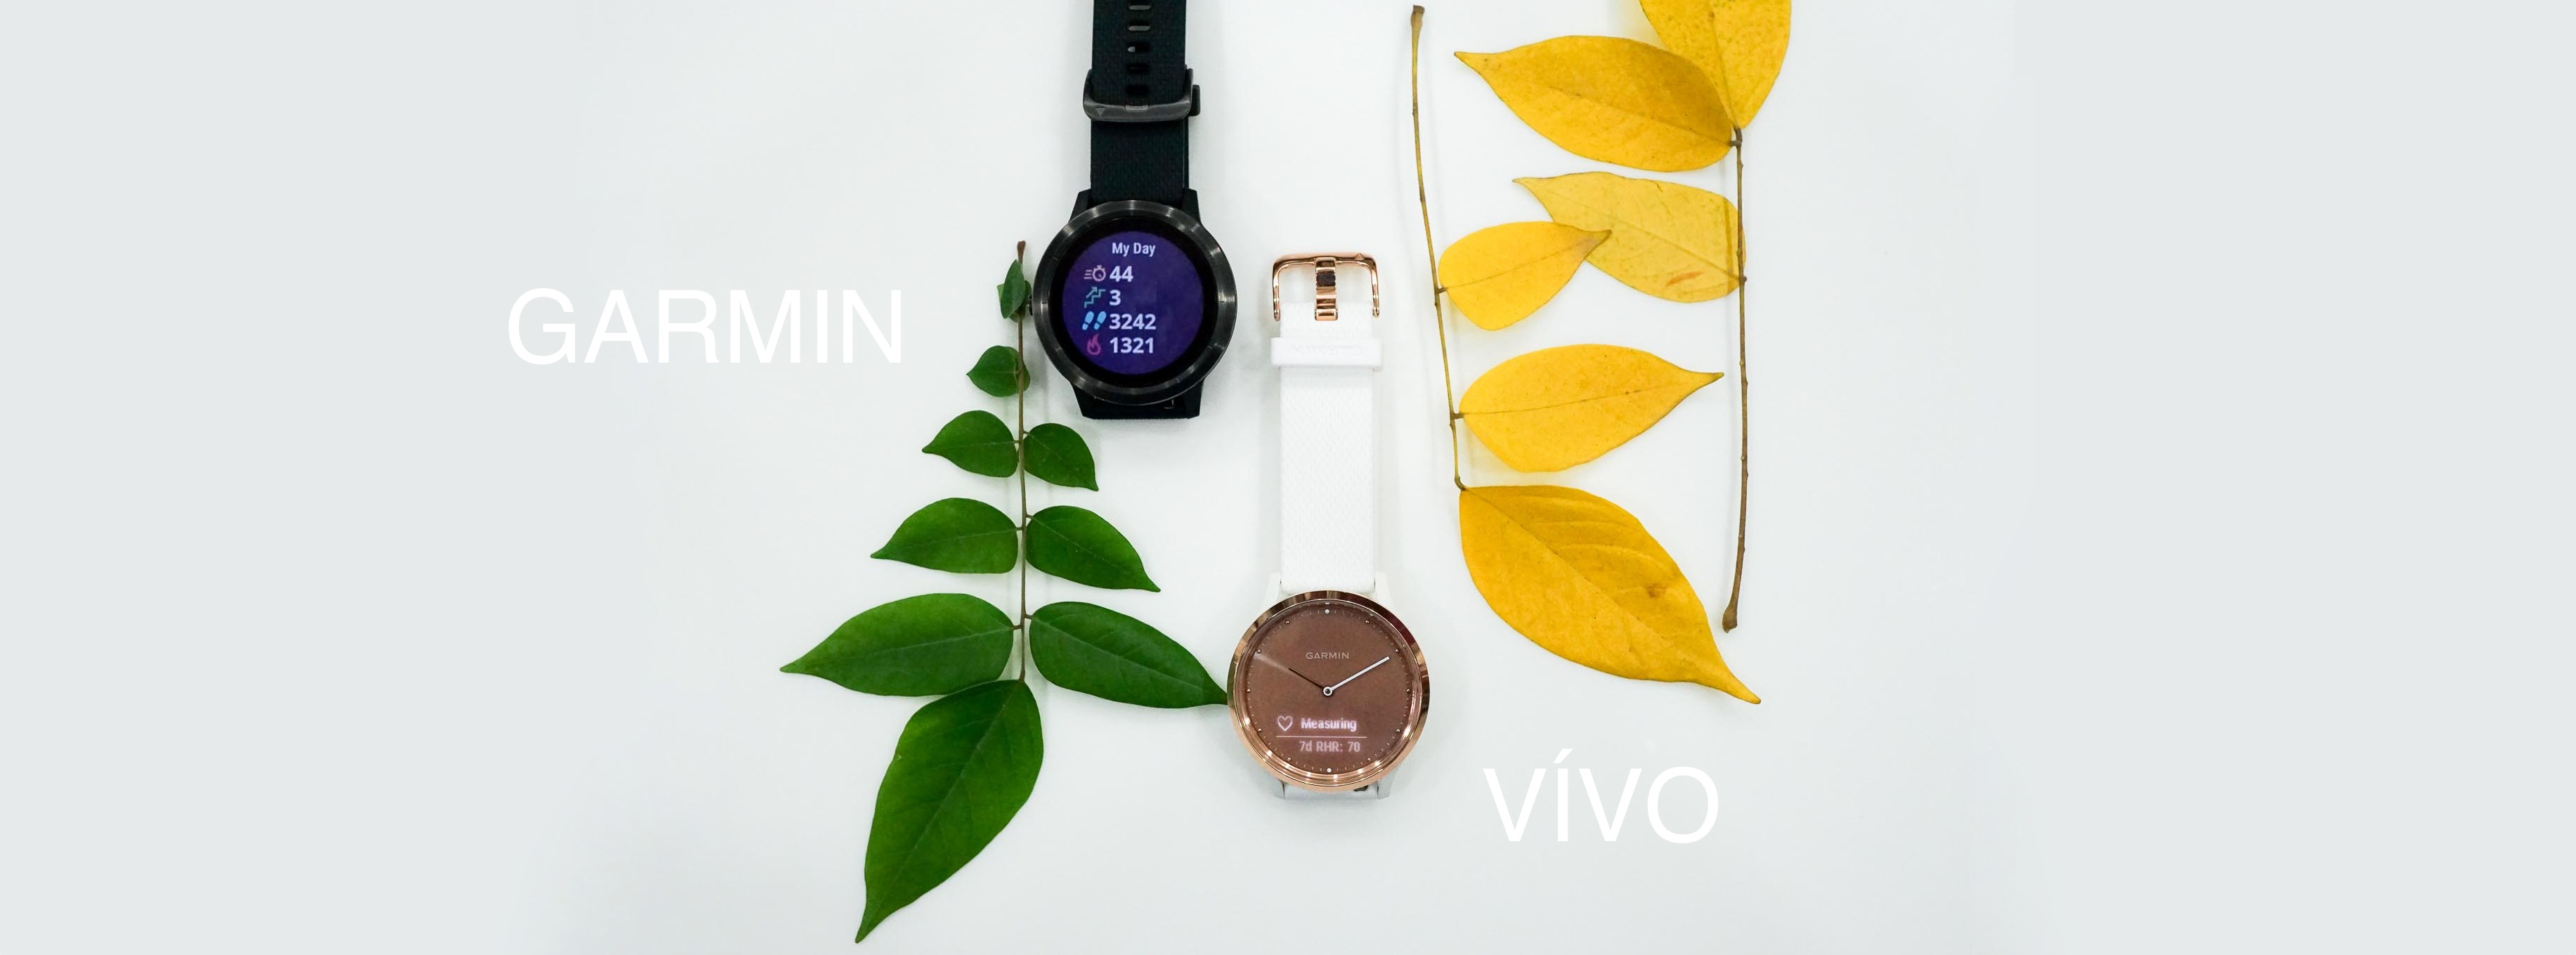 Đánh giá Garmin Vivomove HR và Vivoactive 3: Đẹp, thời trang và nhiều tính năng hay [HOT]